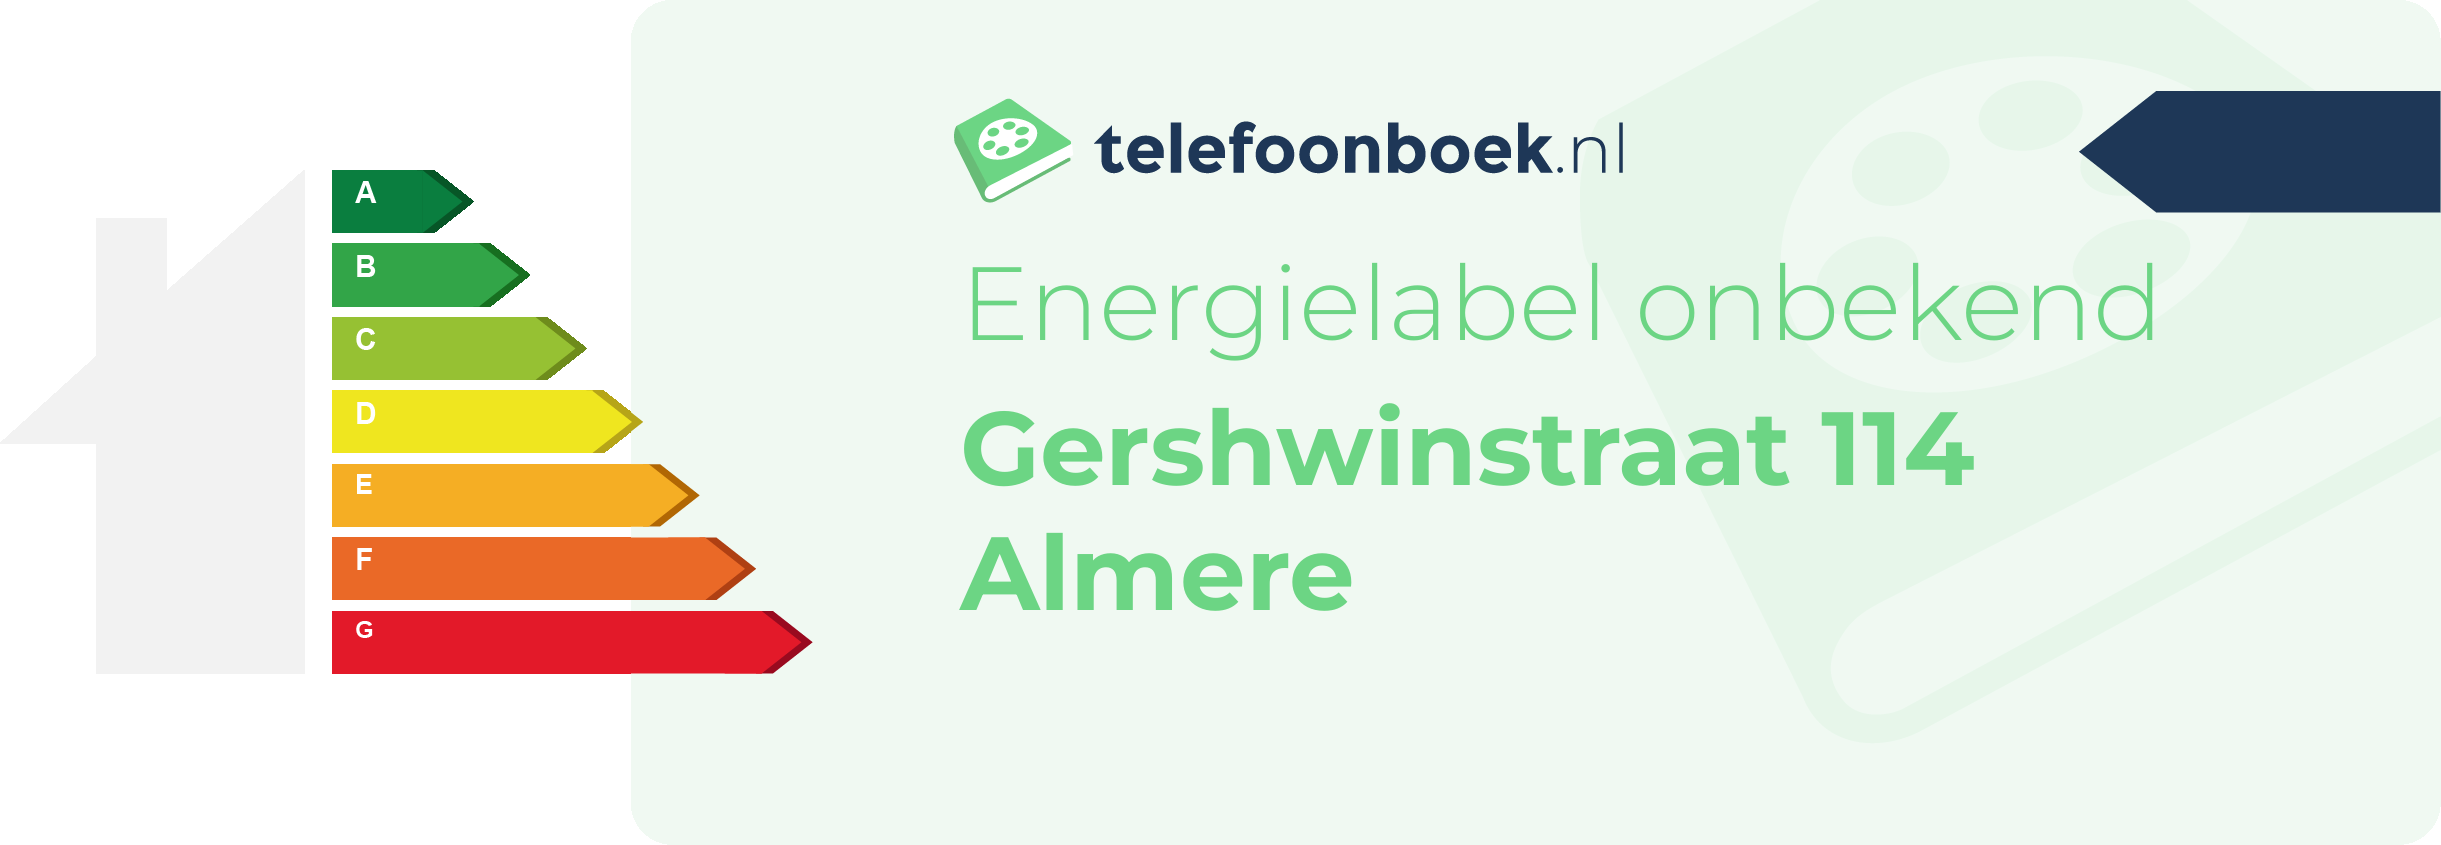 Energielabel Gershwinstraat 114 Almere